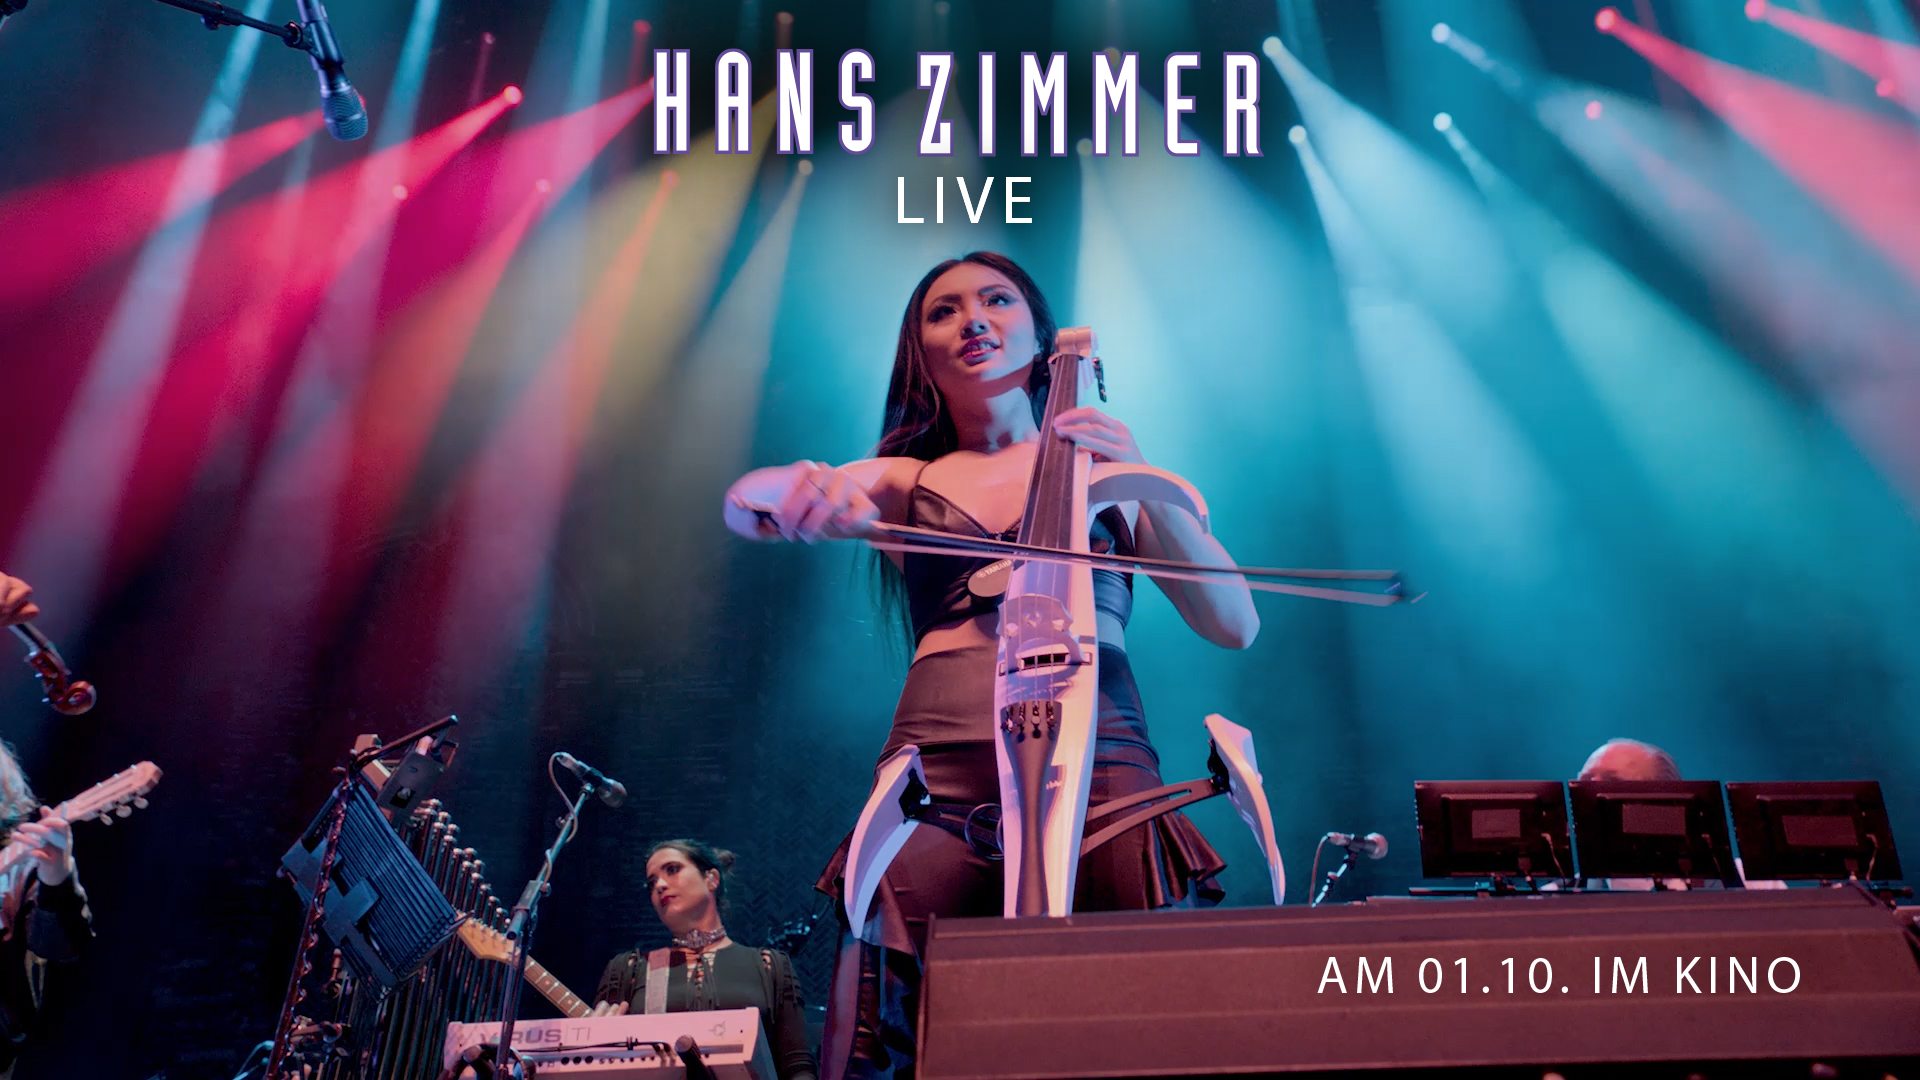 HANS-ZIMMER-LIVE_Trailer_Thumbnail_Geigerin.jpg